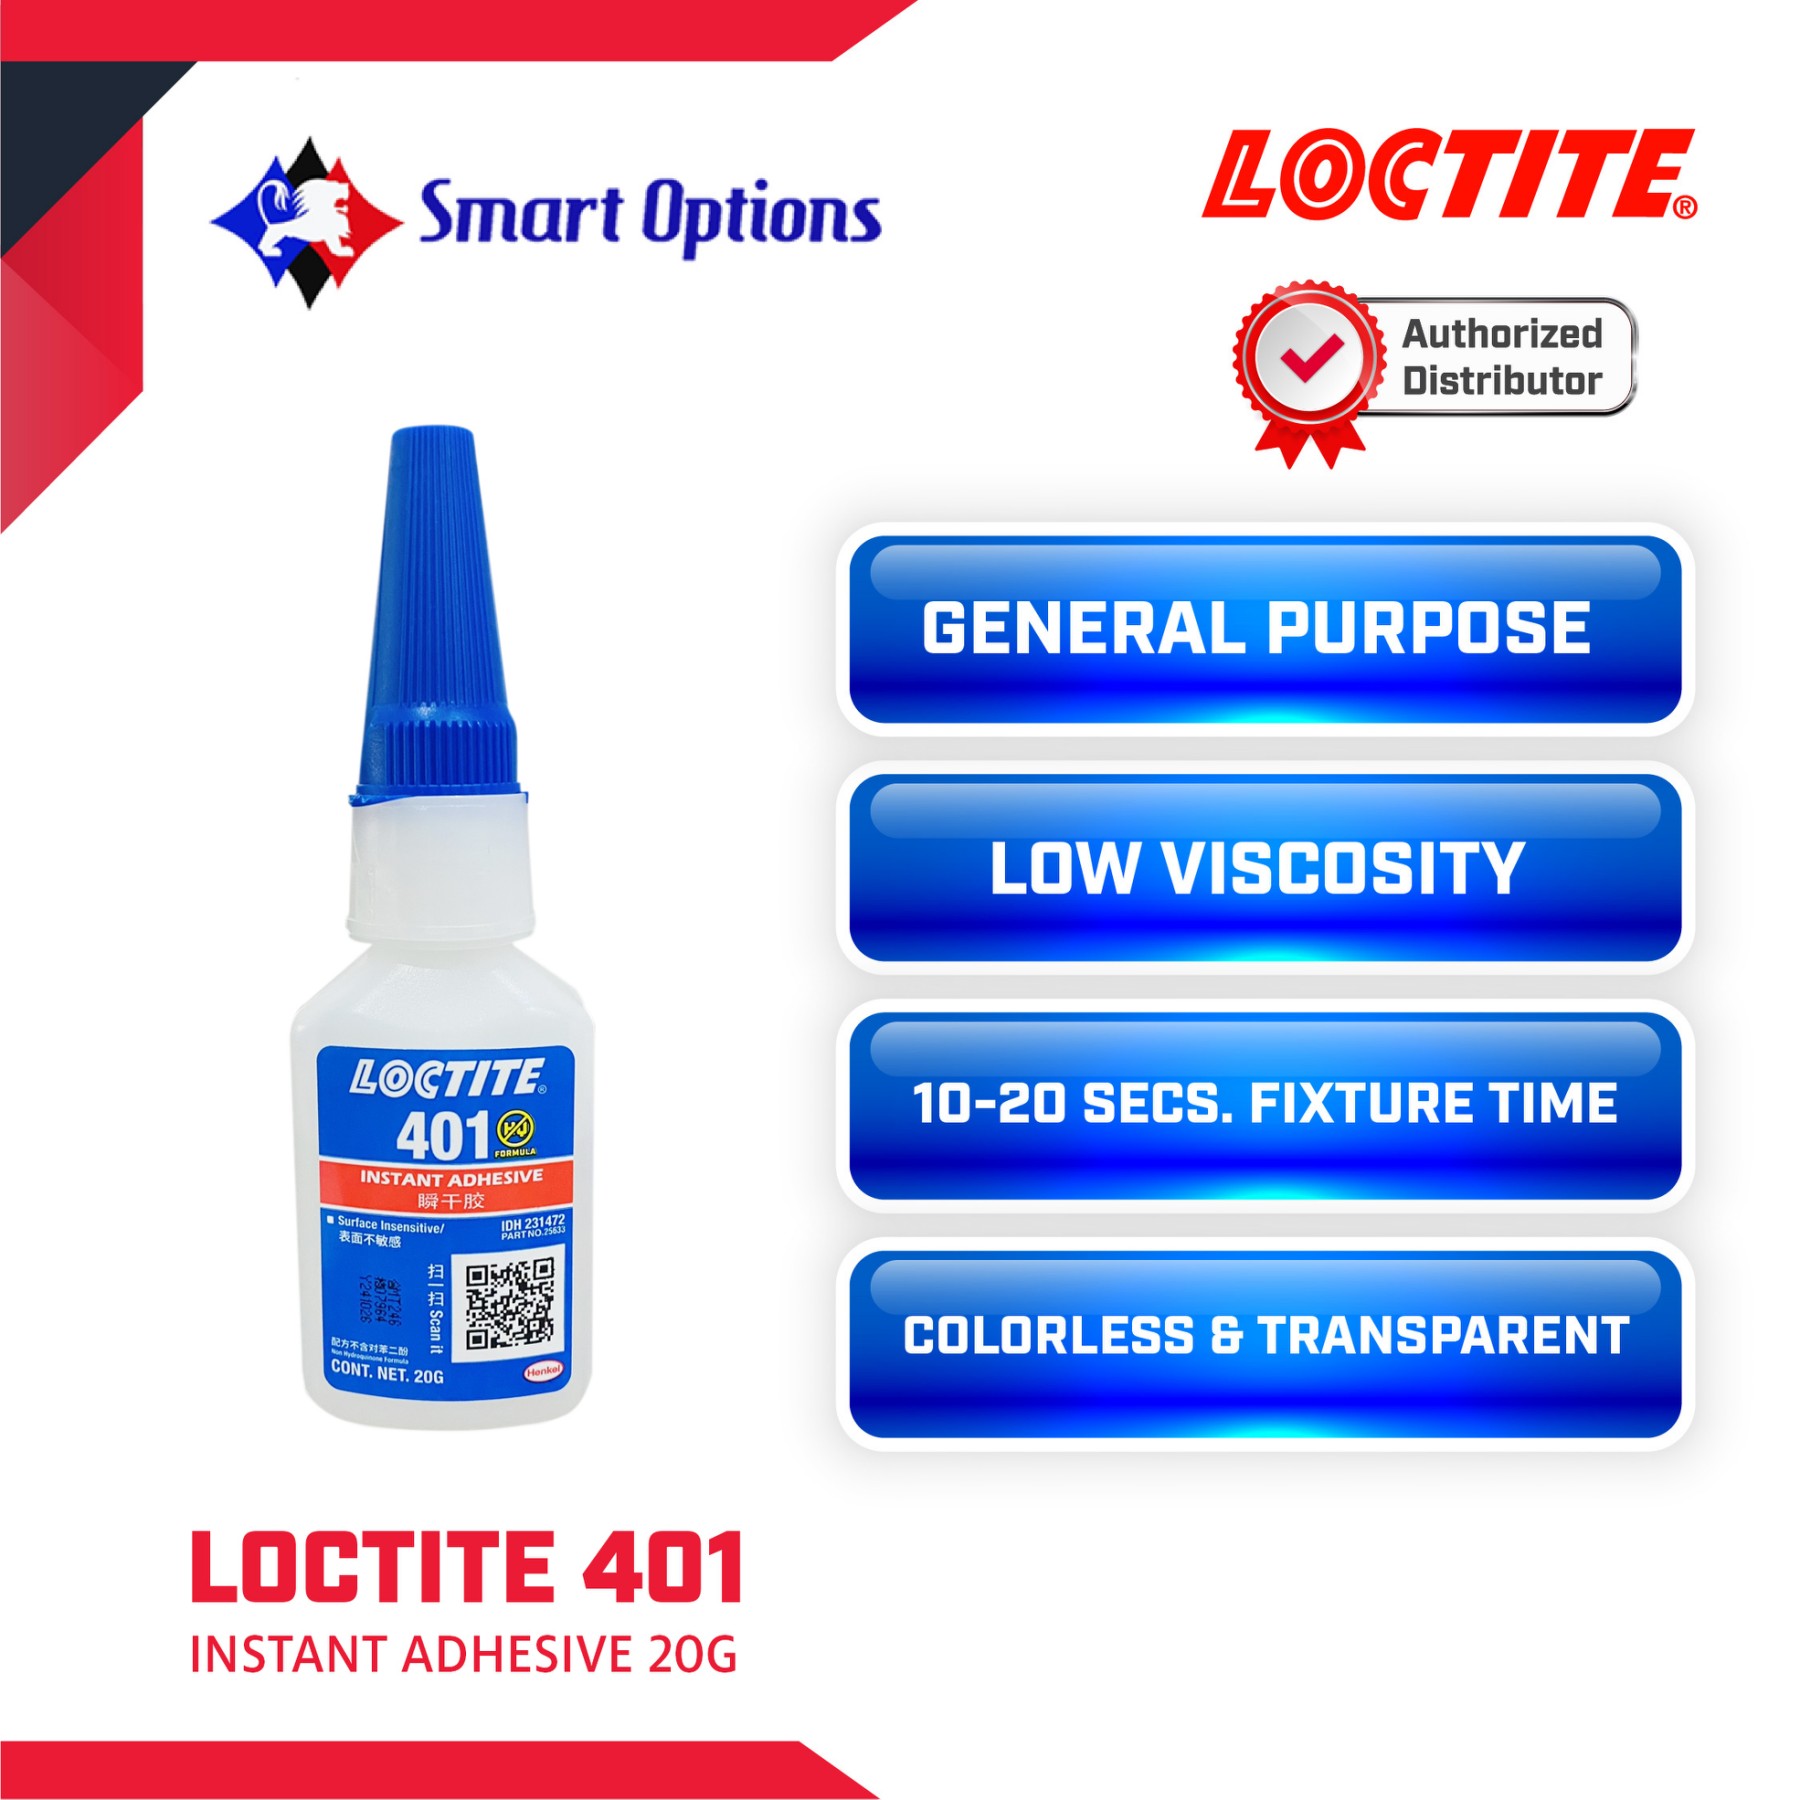 LOCTITE 401 Instant Adhesive